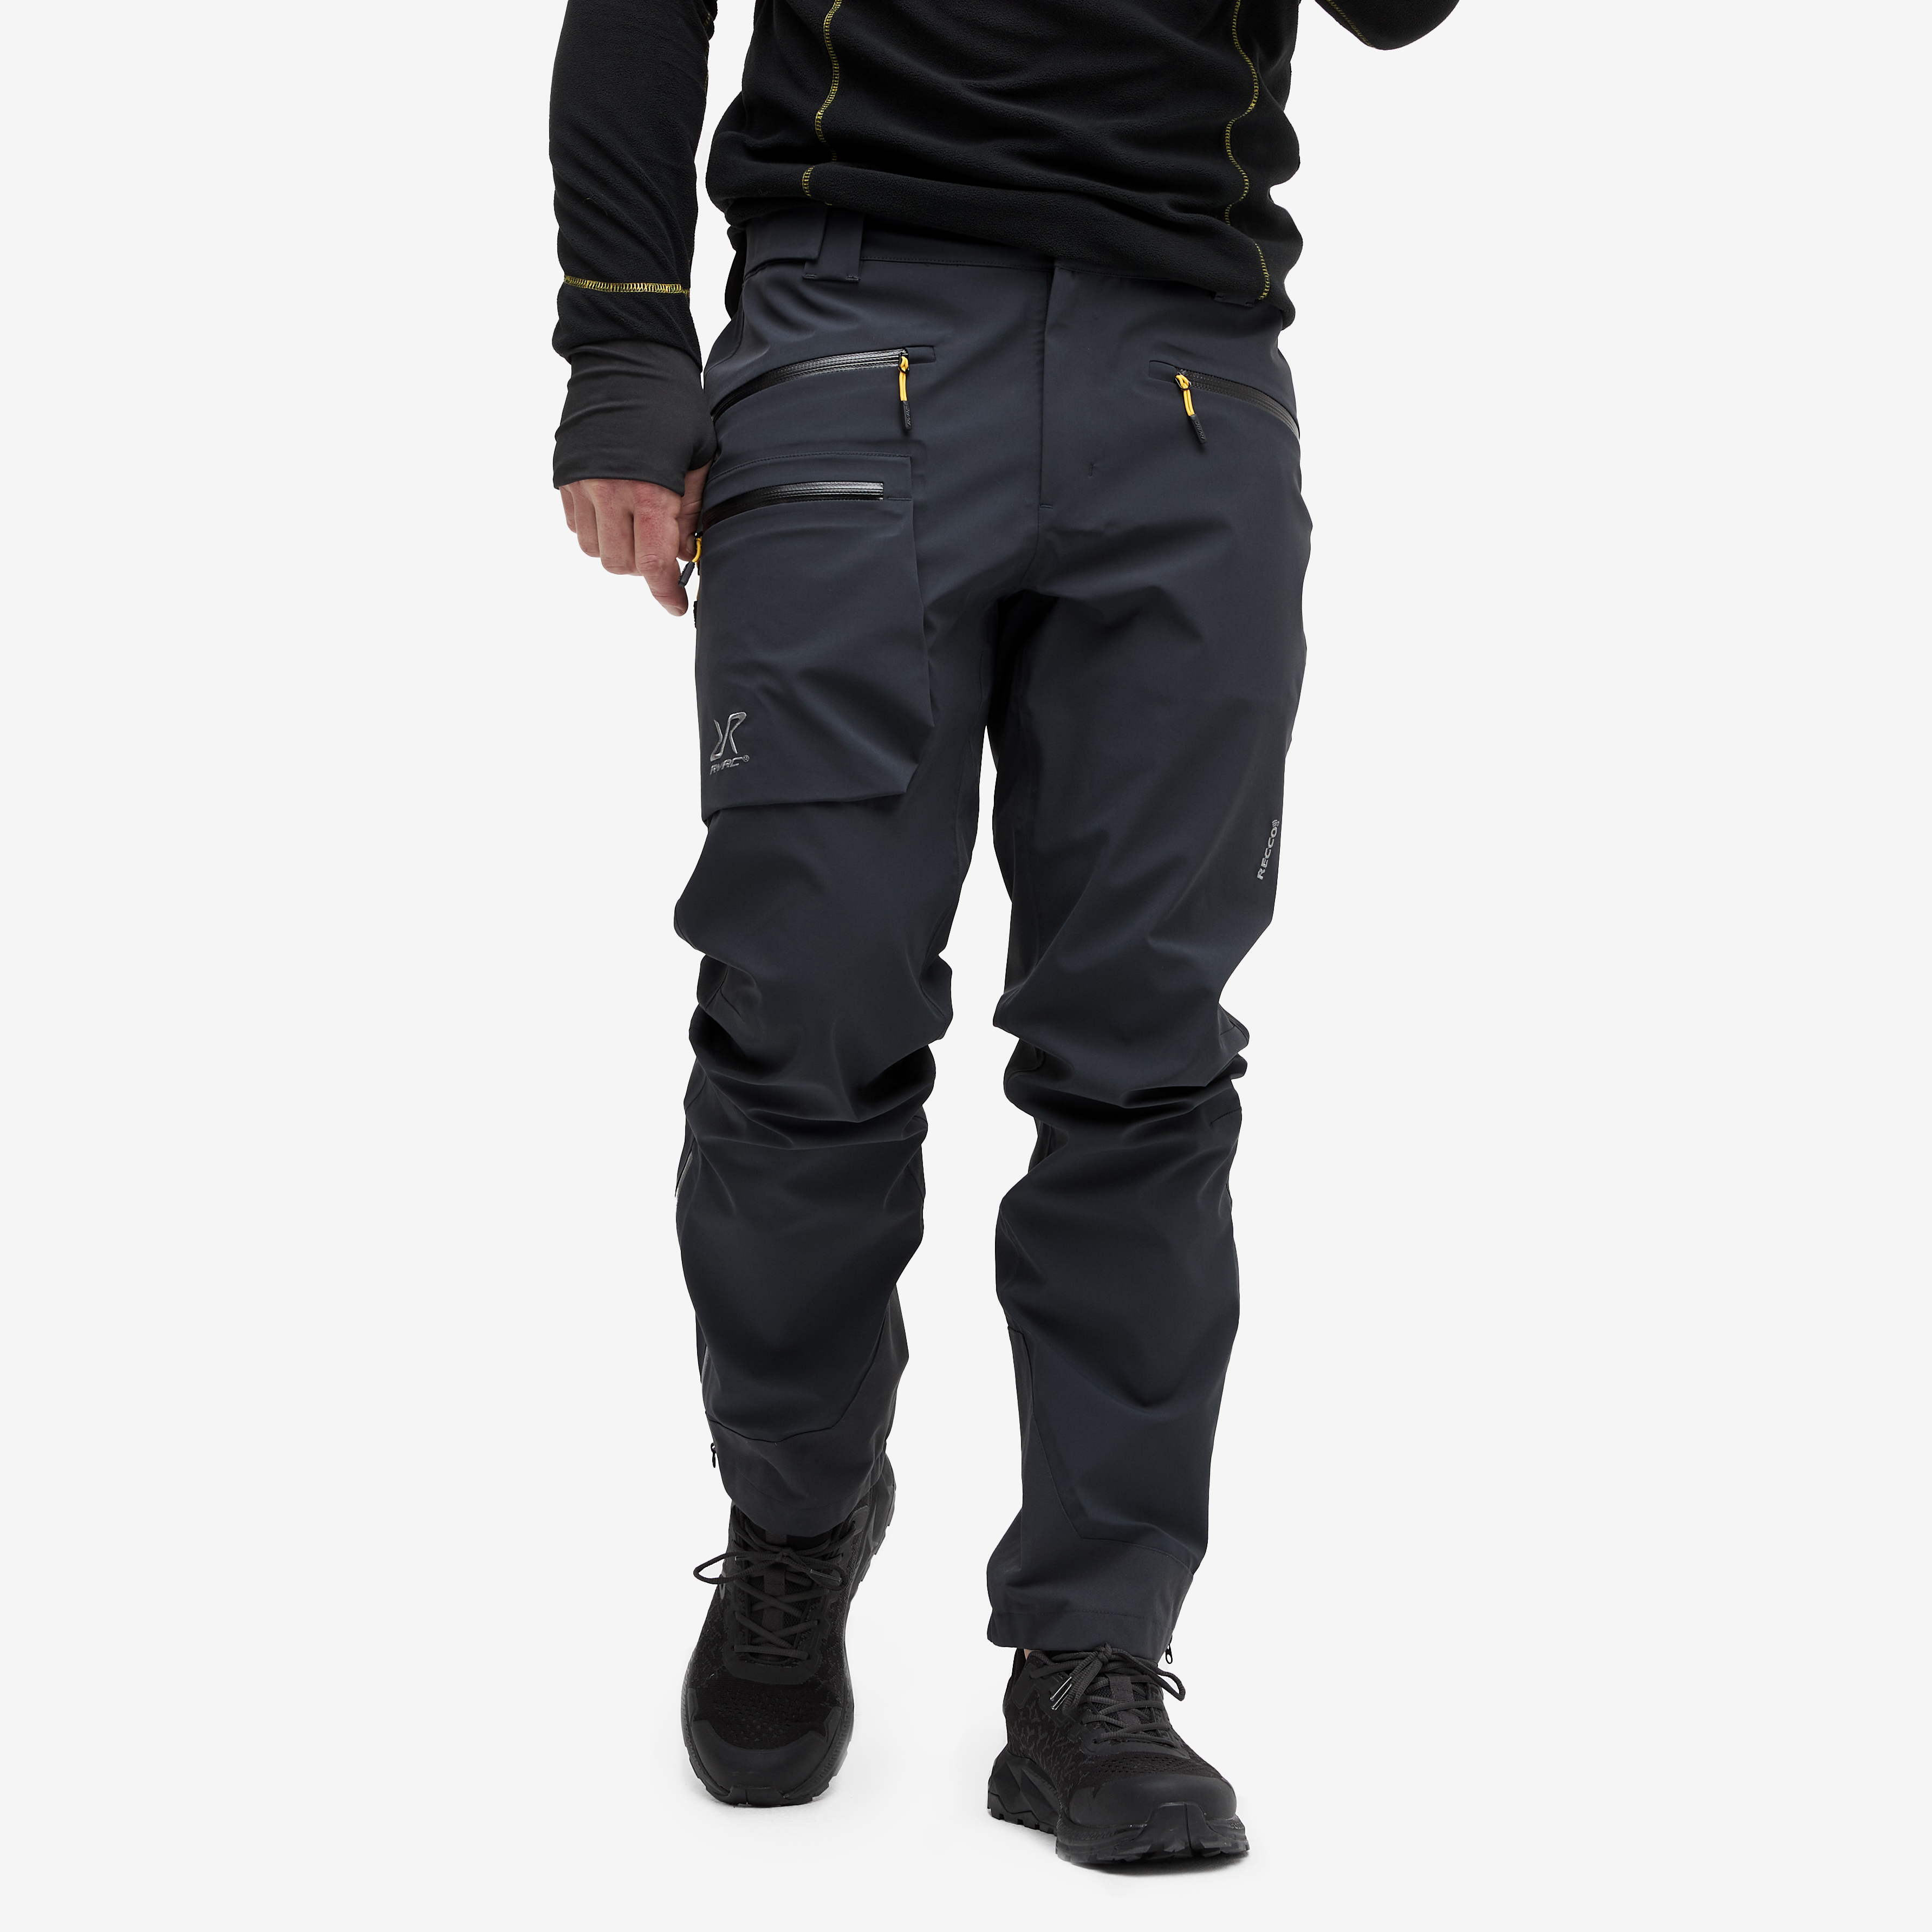 Aphex Pro Pants Charcoal Black Hombres